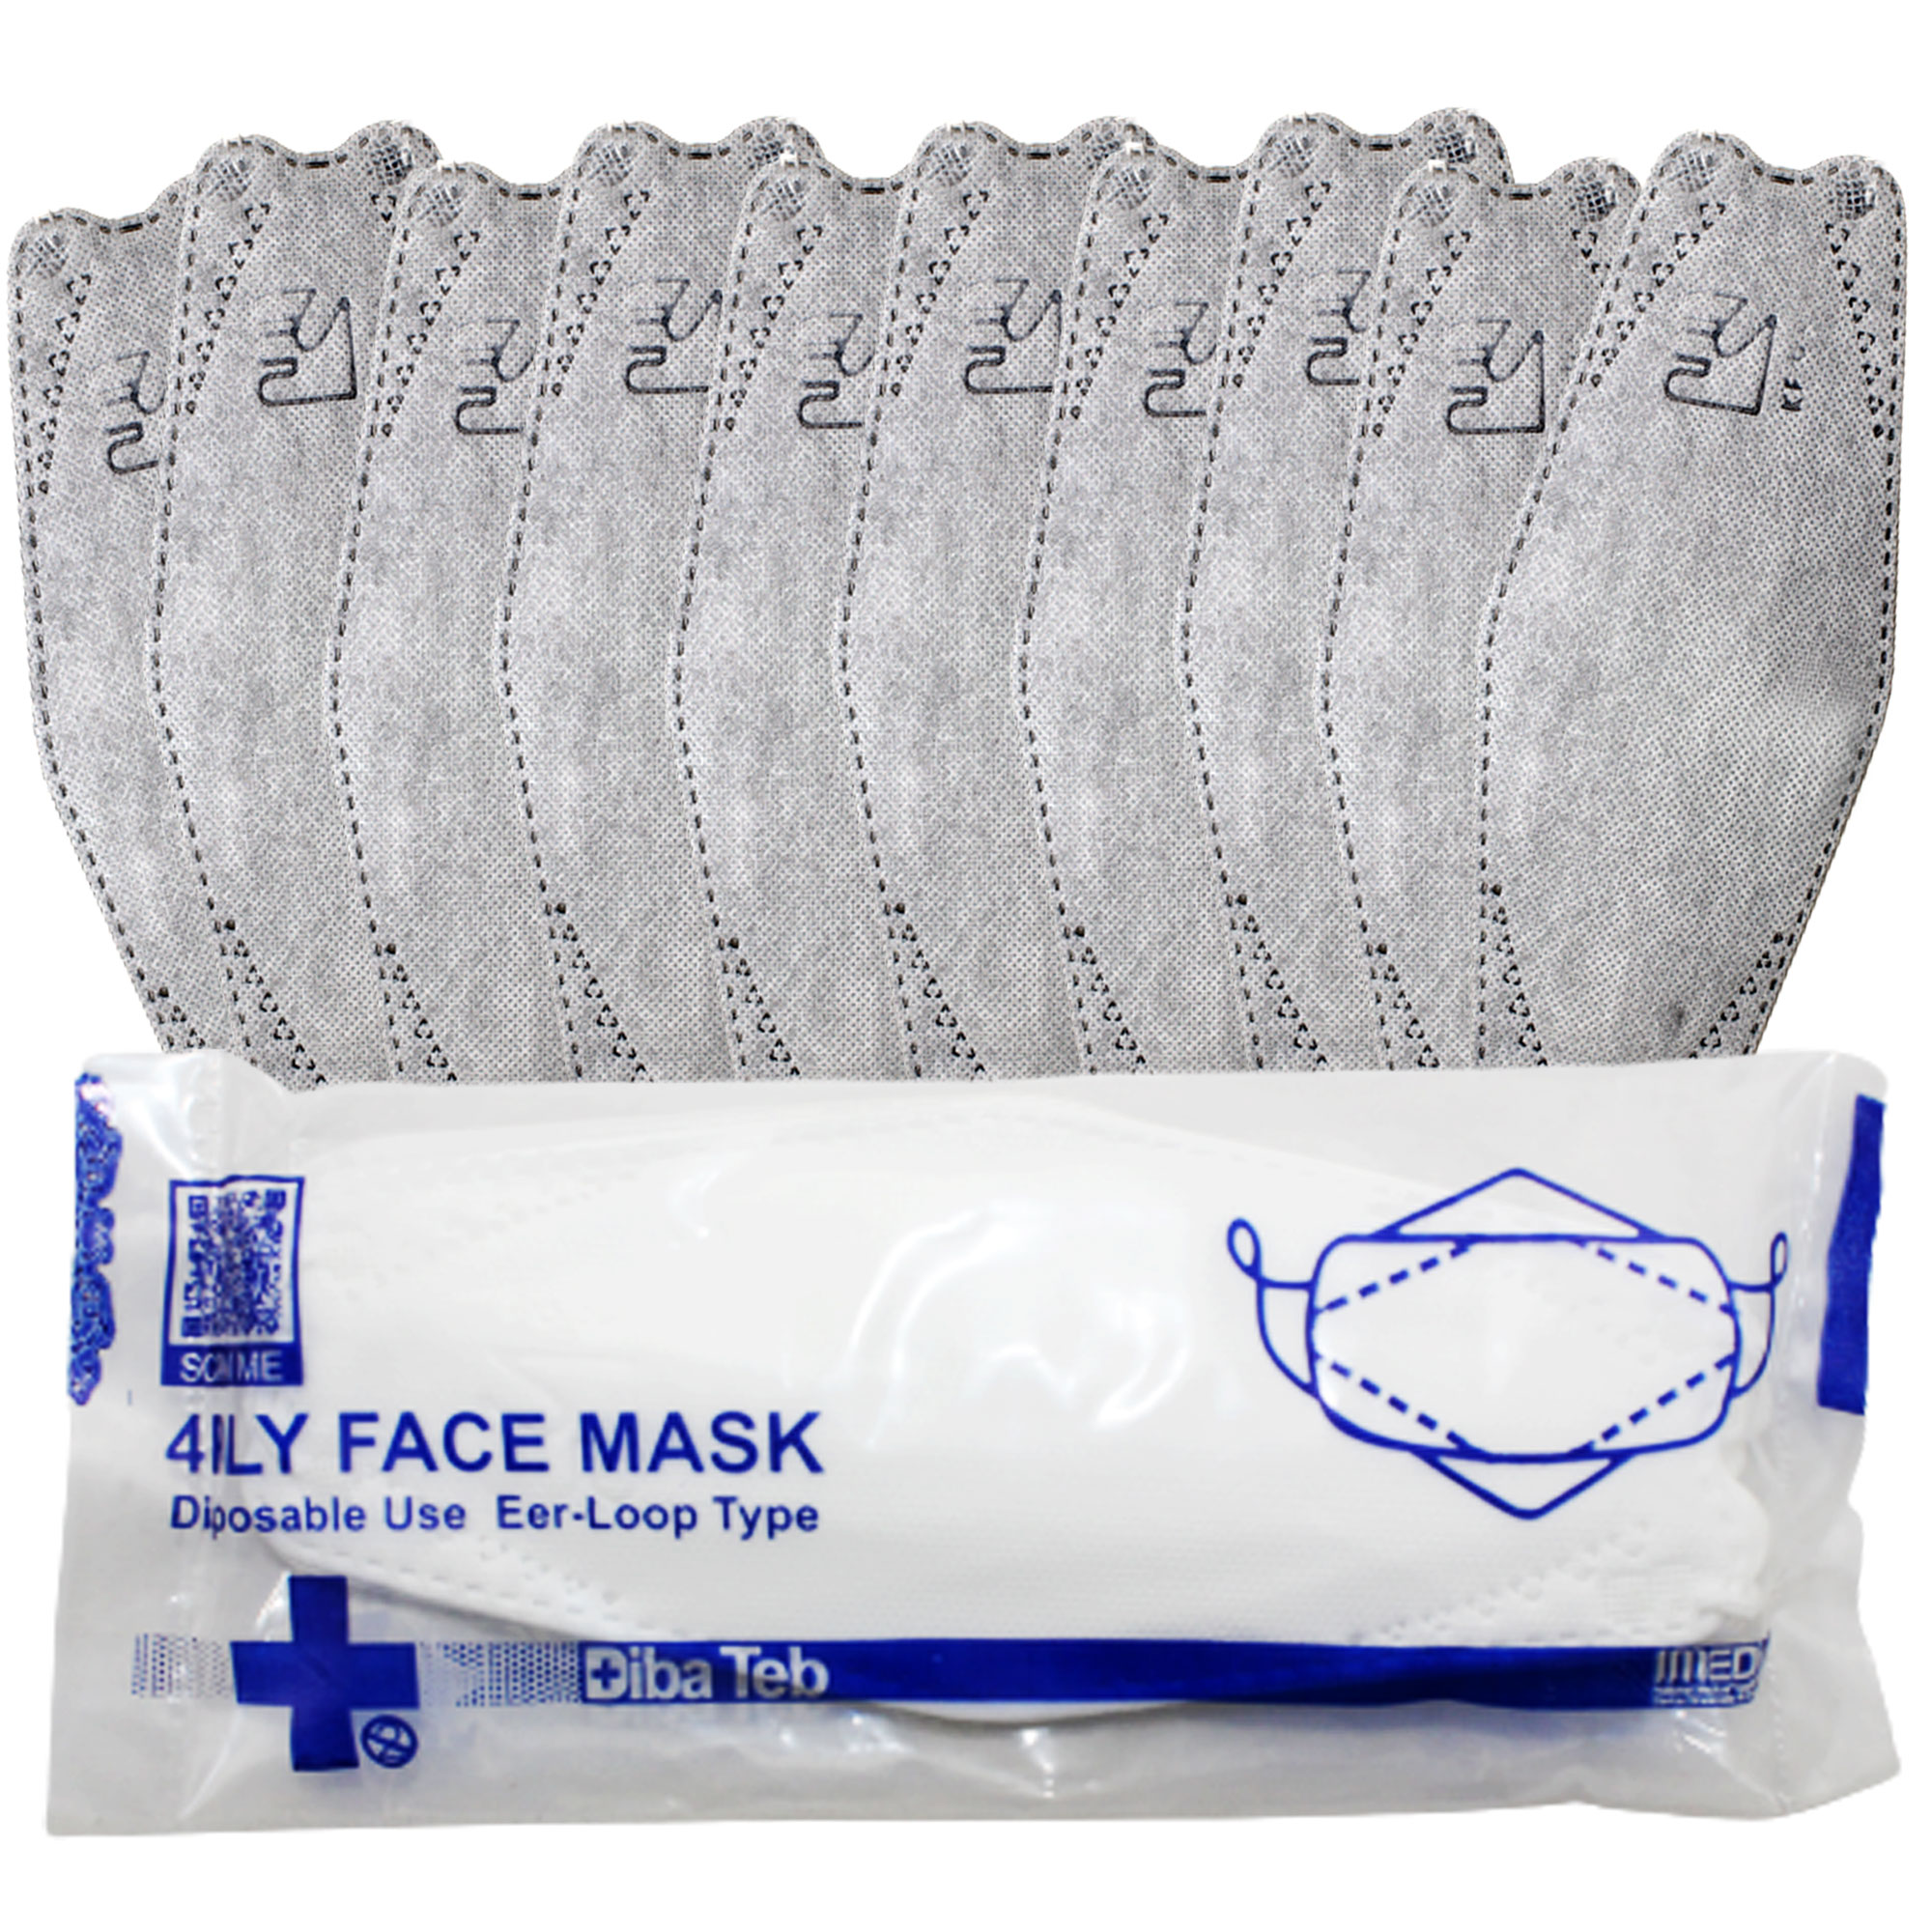 ماسک تنفسی دیباطب مدل 3dبسته 10 عددی